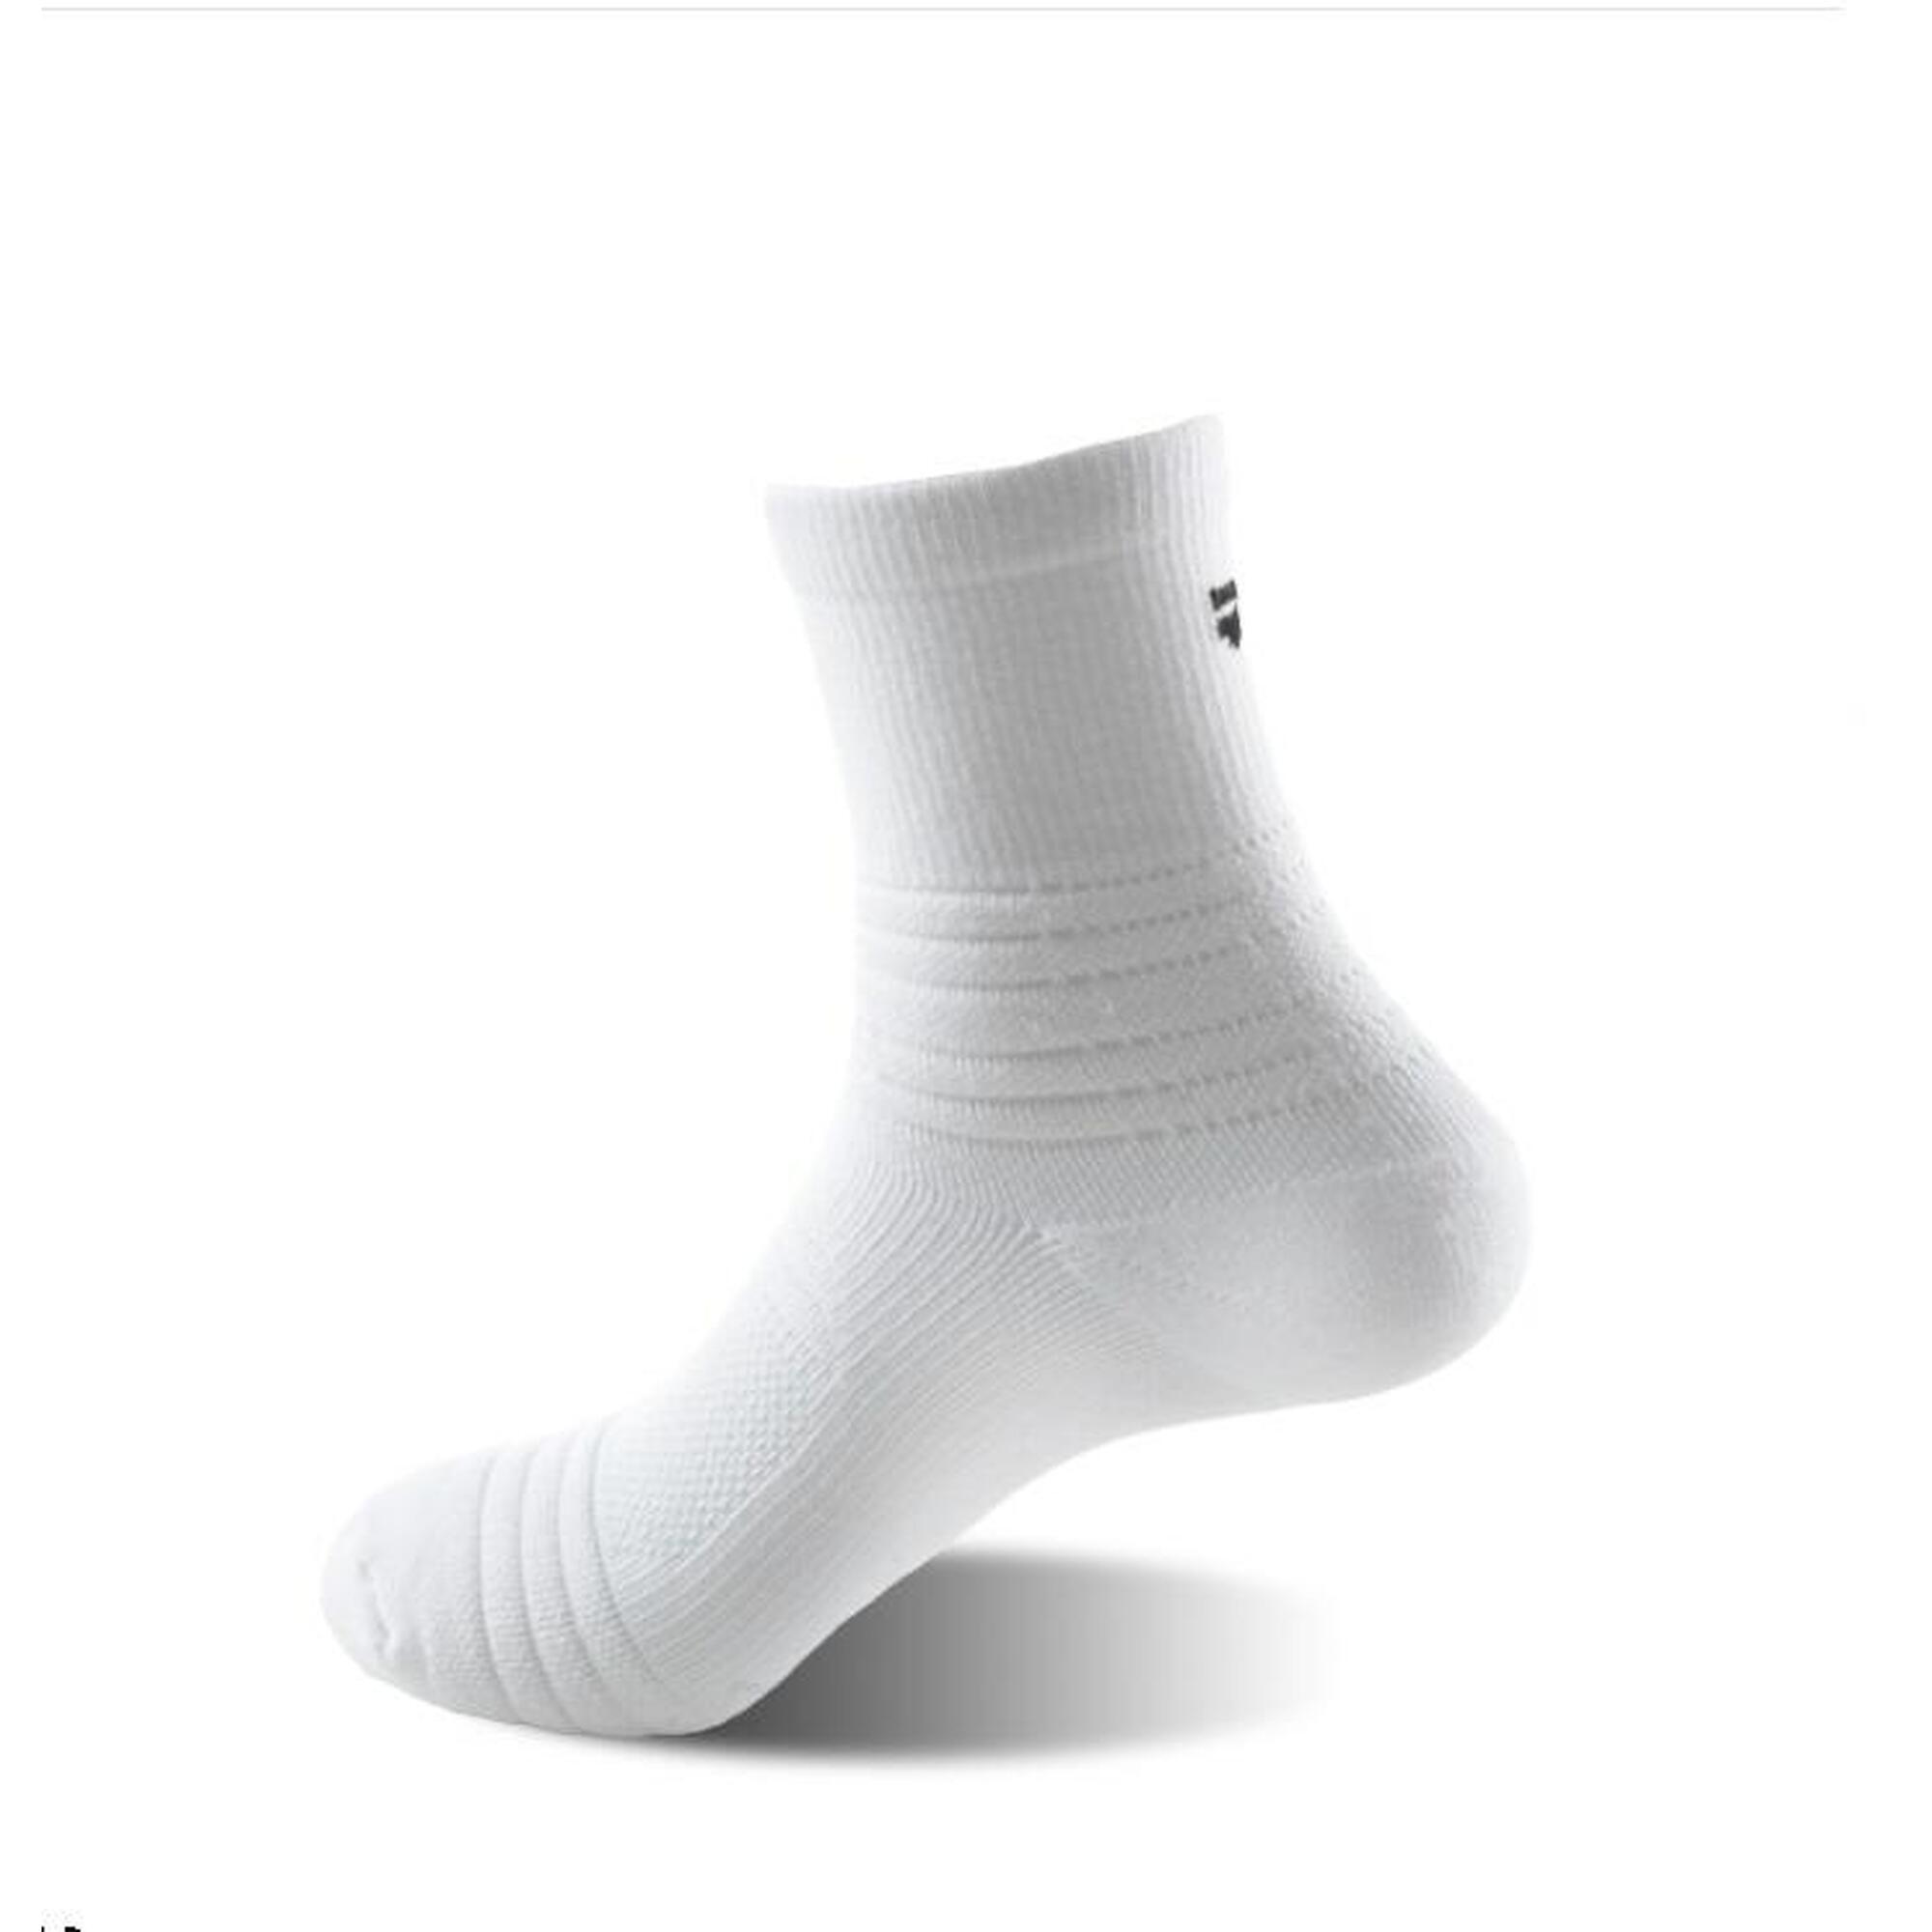 G-ZOX Zero Sports Socks (3 pack) - Black x2 + White x1